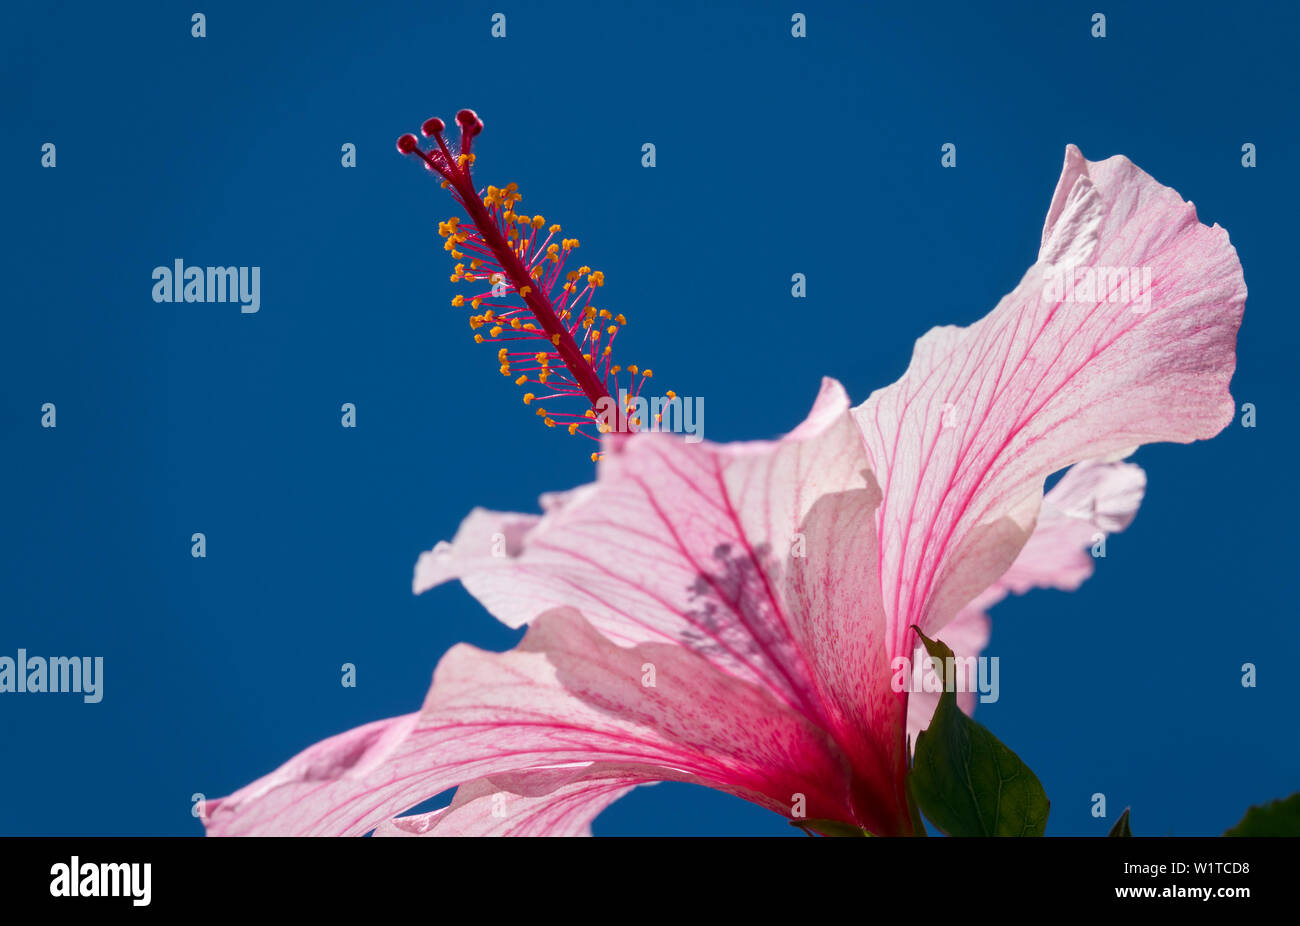 Hibiscus, Hibiscus rosa-sinensis, flower, Madagascar Stock Photo